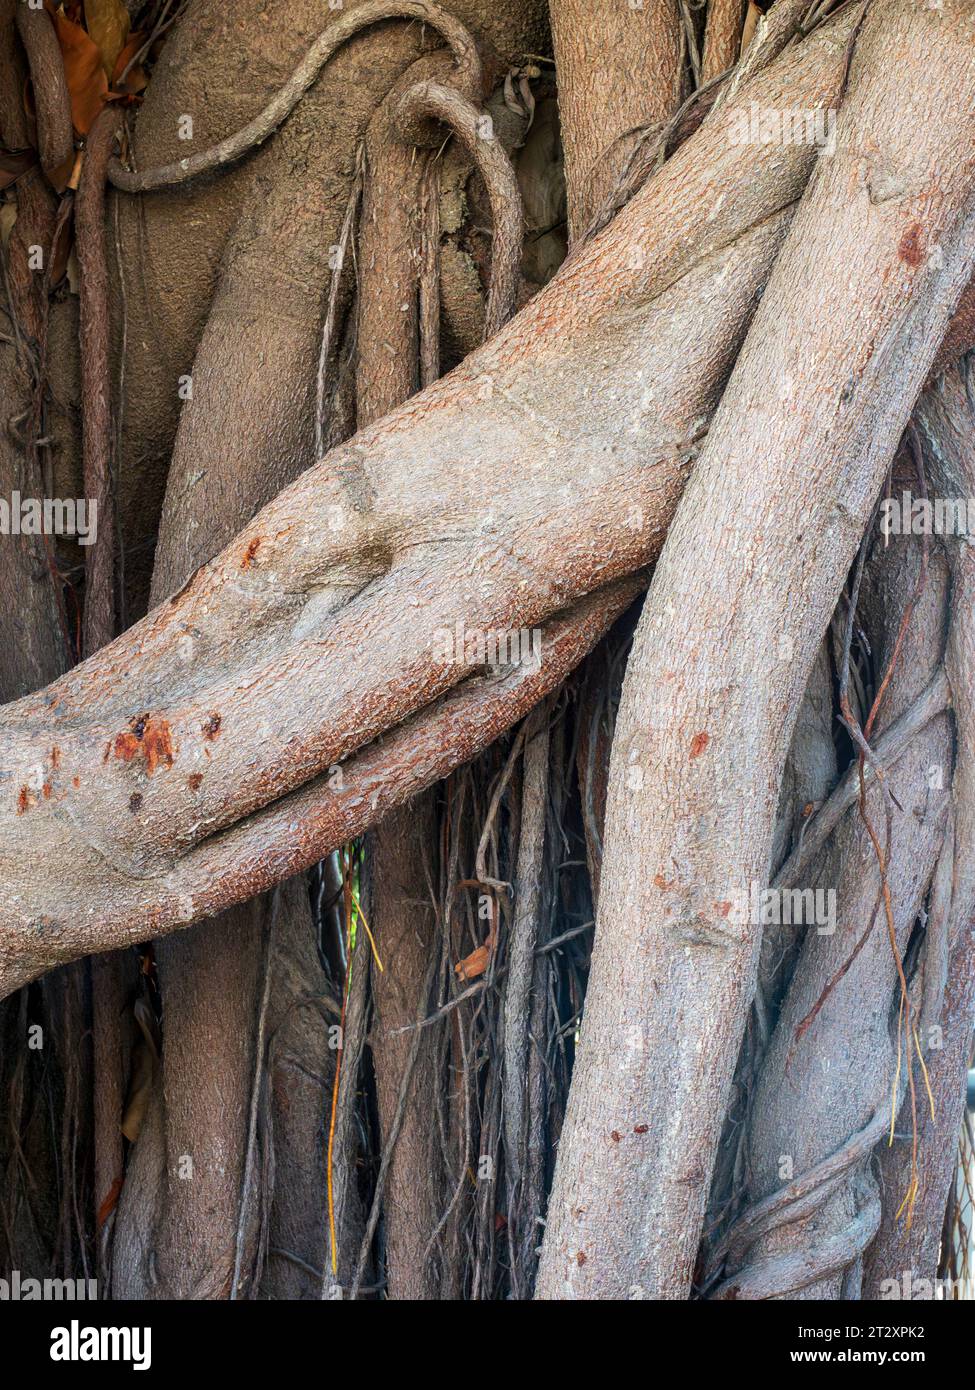 Nahaufnahme des Stammes eines hundert Jahre alten Ficus-Baumes Stockfoto